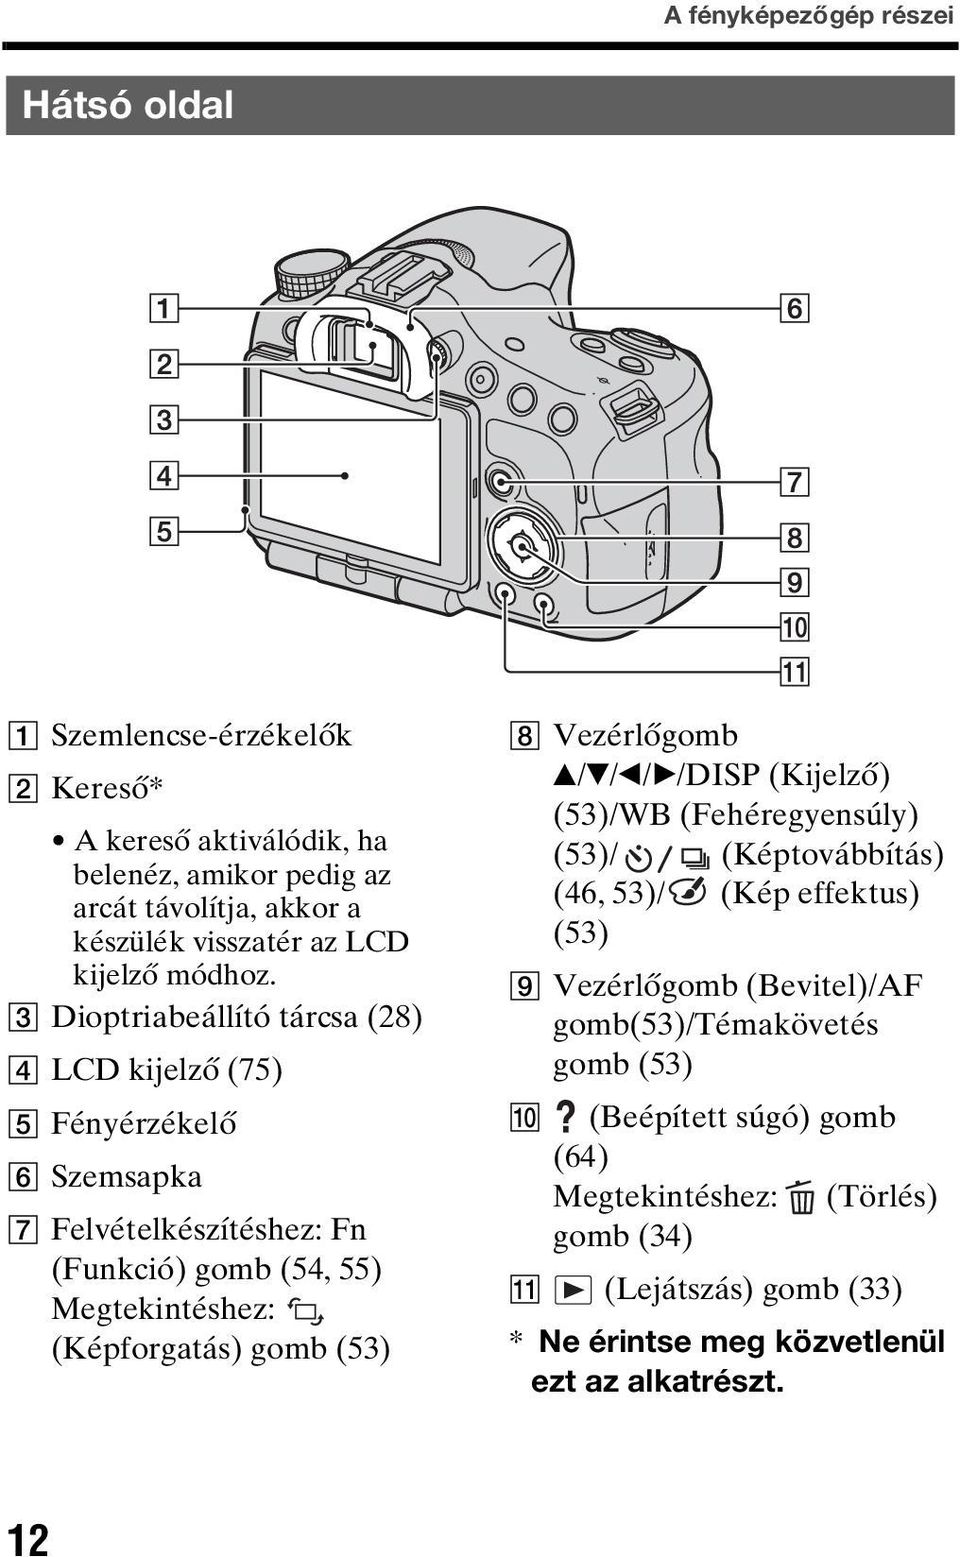 C Dioptriabeállító tárcsa (28) D LCD kijelző (75) E Fényérzékelő F Szemsapka G Felvételkészítéshez: Fn (Funkció) gomb (54, 55) Megtekintéshez: (Képforgatás) gomb